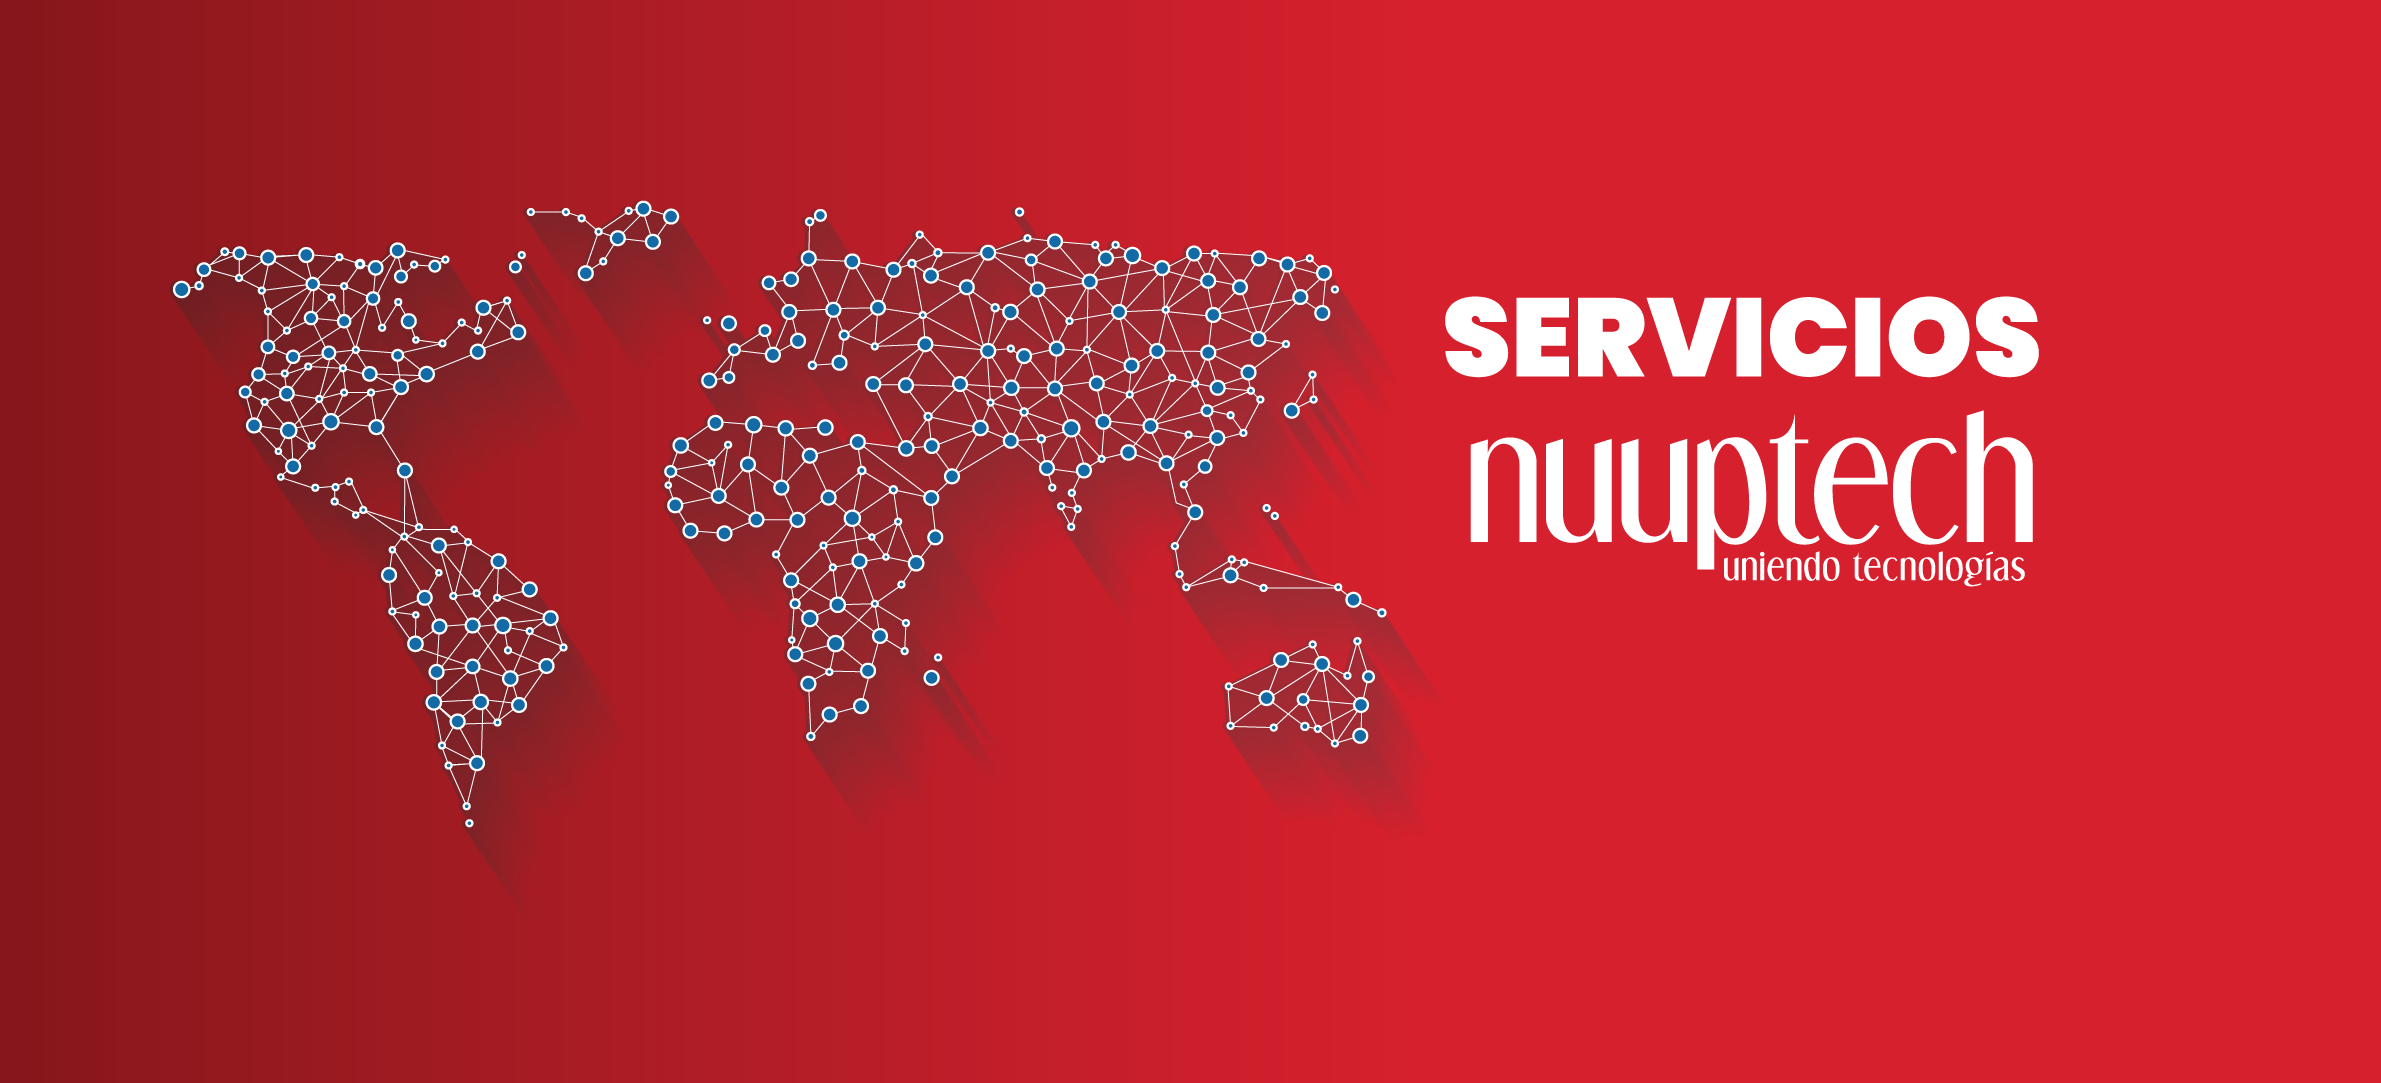 servicios_nuuptech